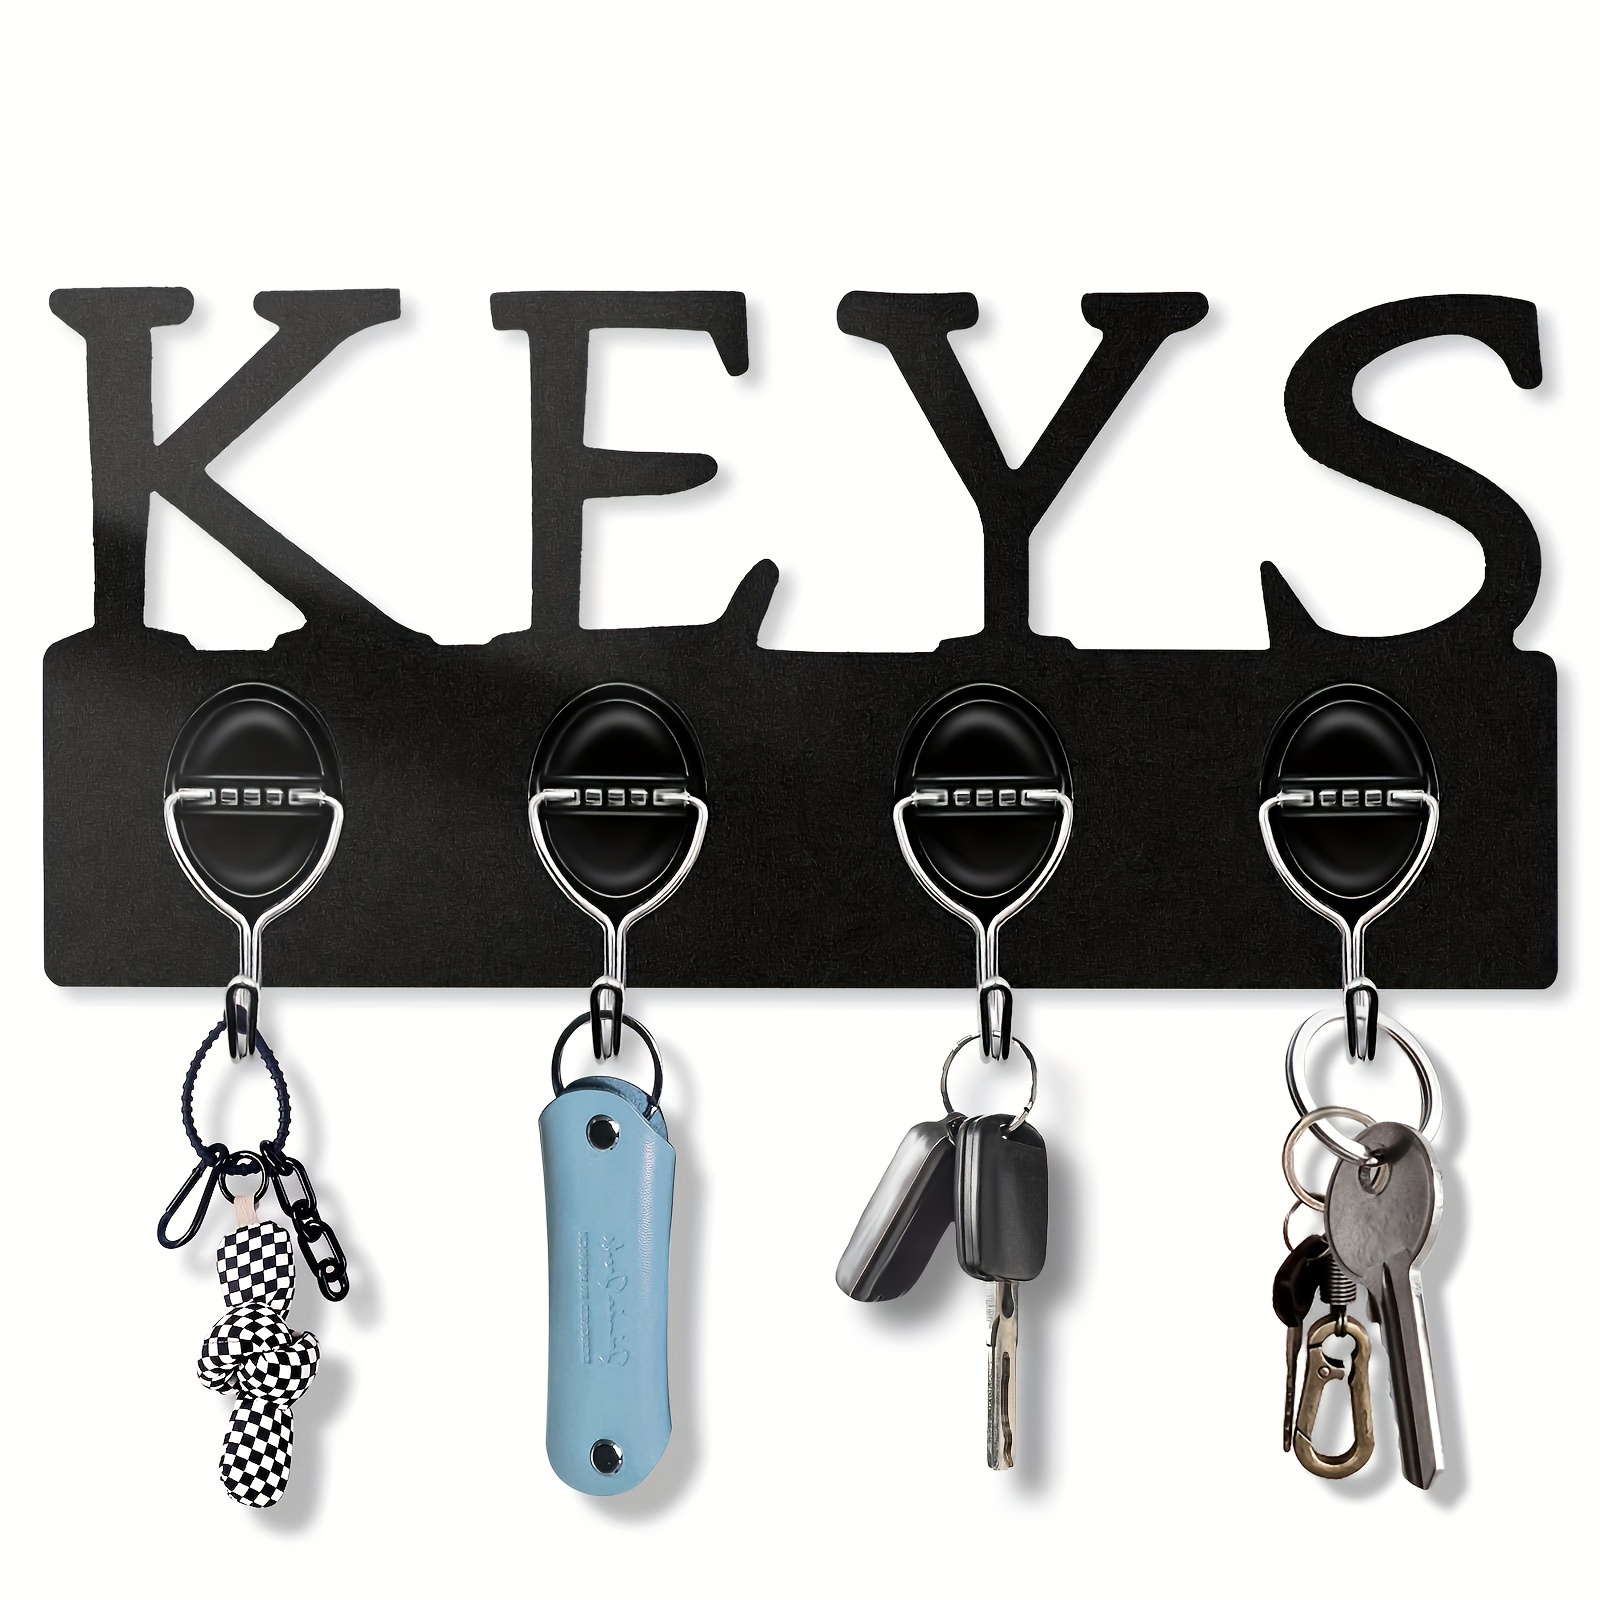 Soporte de llave para pared / organizador de llaves / colgador de